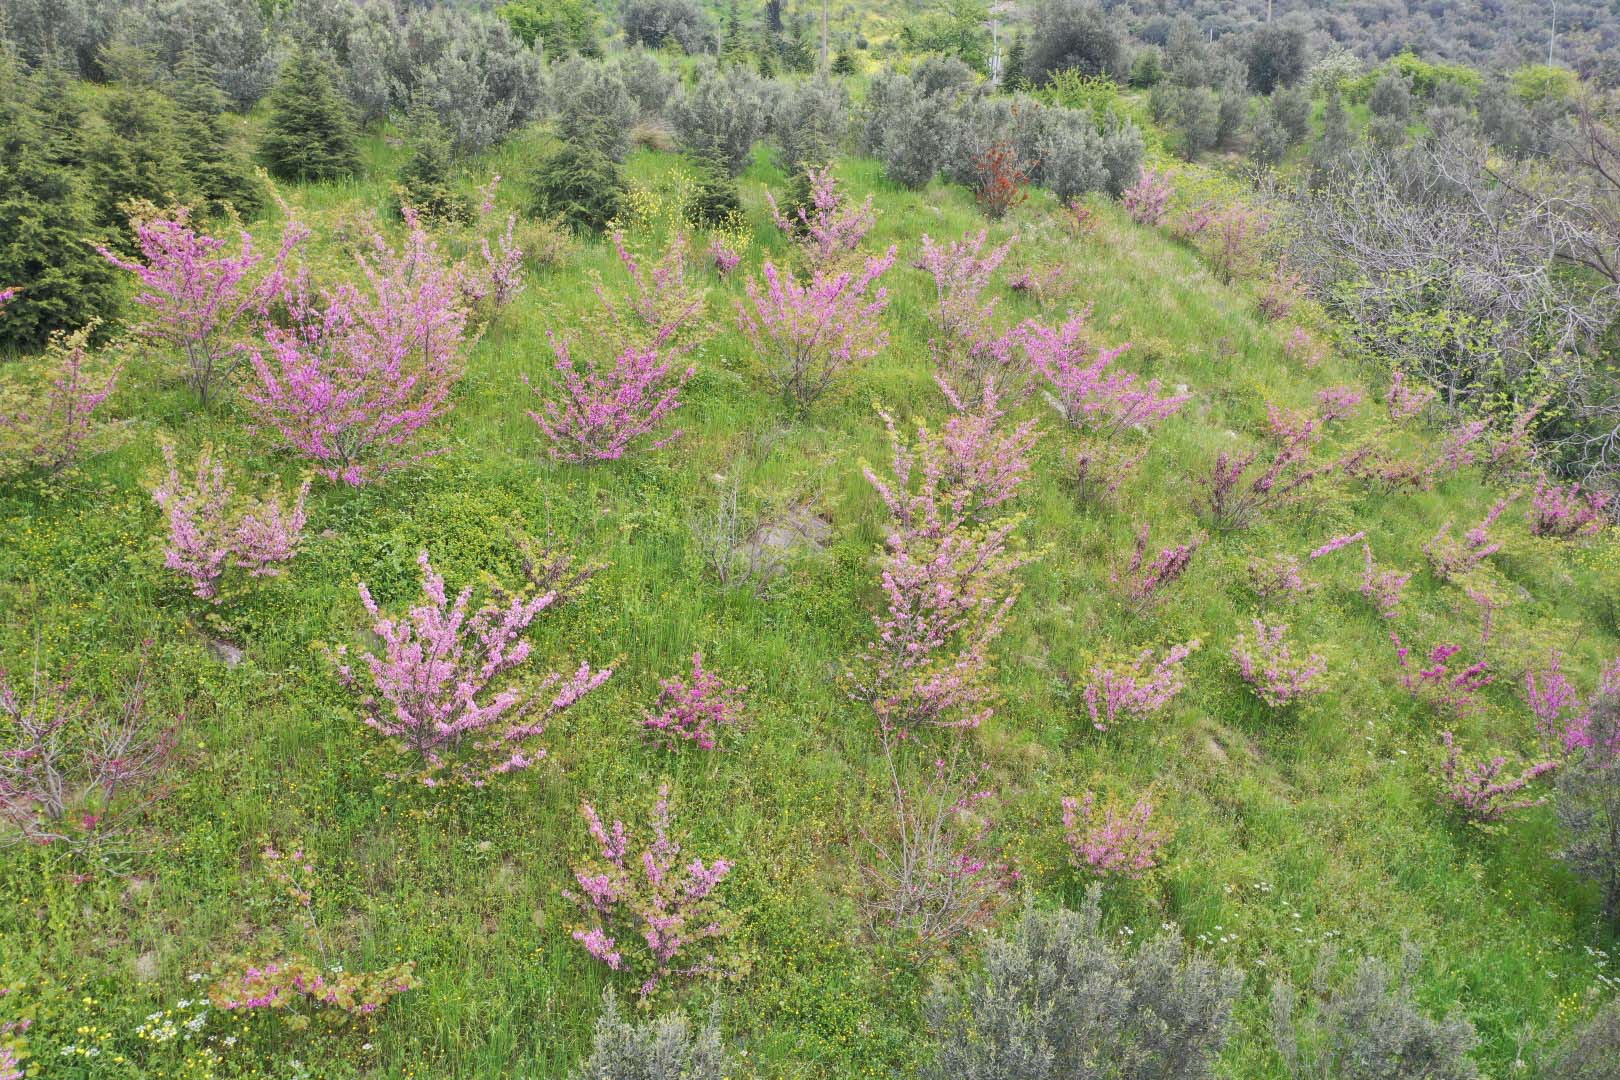  Kocaeli’de 10 Yıl Önce Dikilen Erguvan Ağaçları Çiçek Açtı